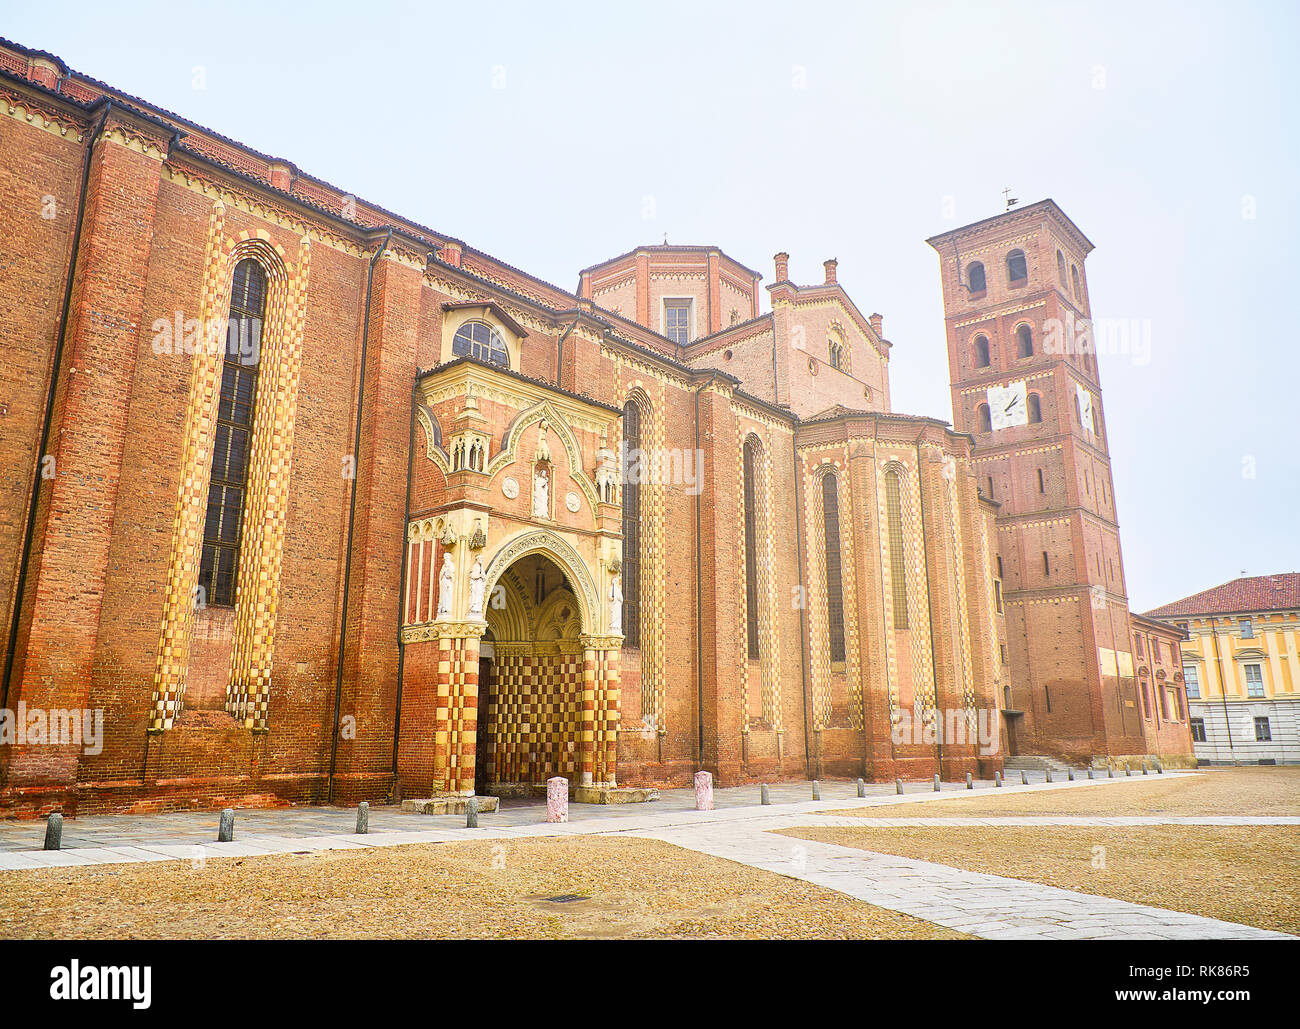 Die seitliche Fassade der Kathedrale Santa Maria Assunta e San Gottardo, Asti Kathedrale. Blick von der Piazza Kathedrale entfernt. Asti, Piemont, Italien. Stockfoto